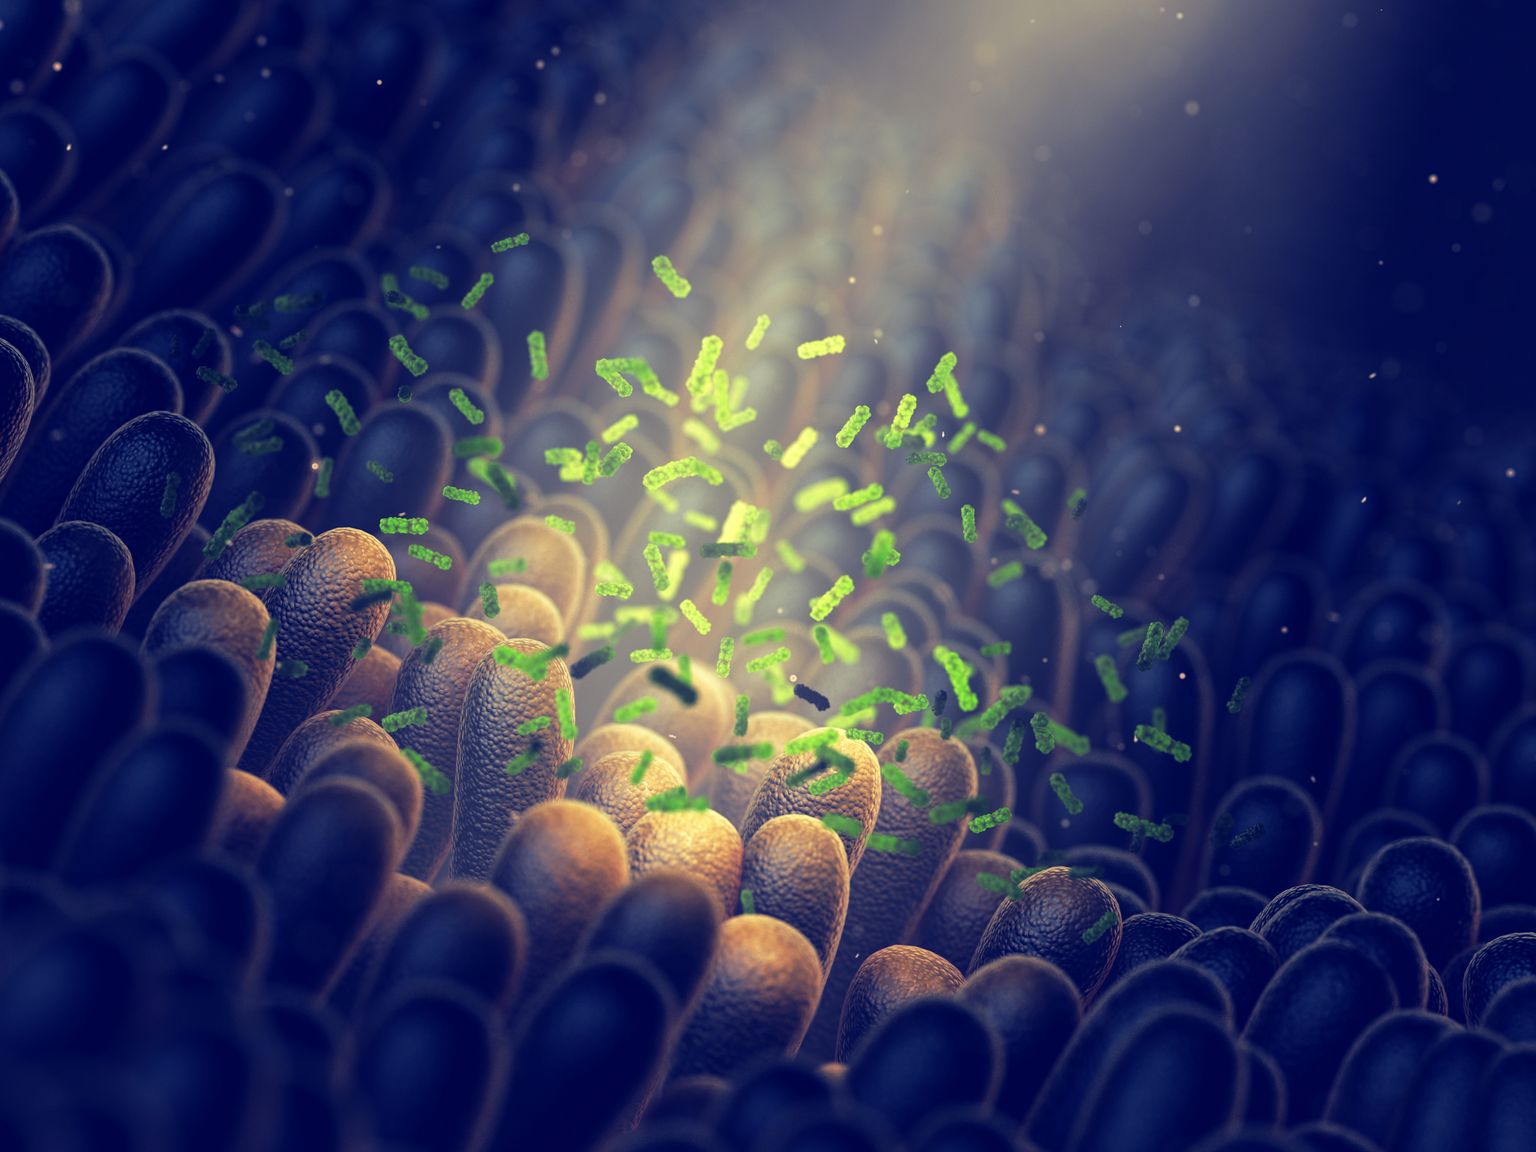 bactéries intestinales, santé de la flore intestinale, imagerie 3D